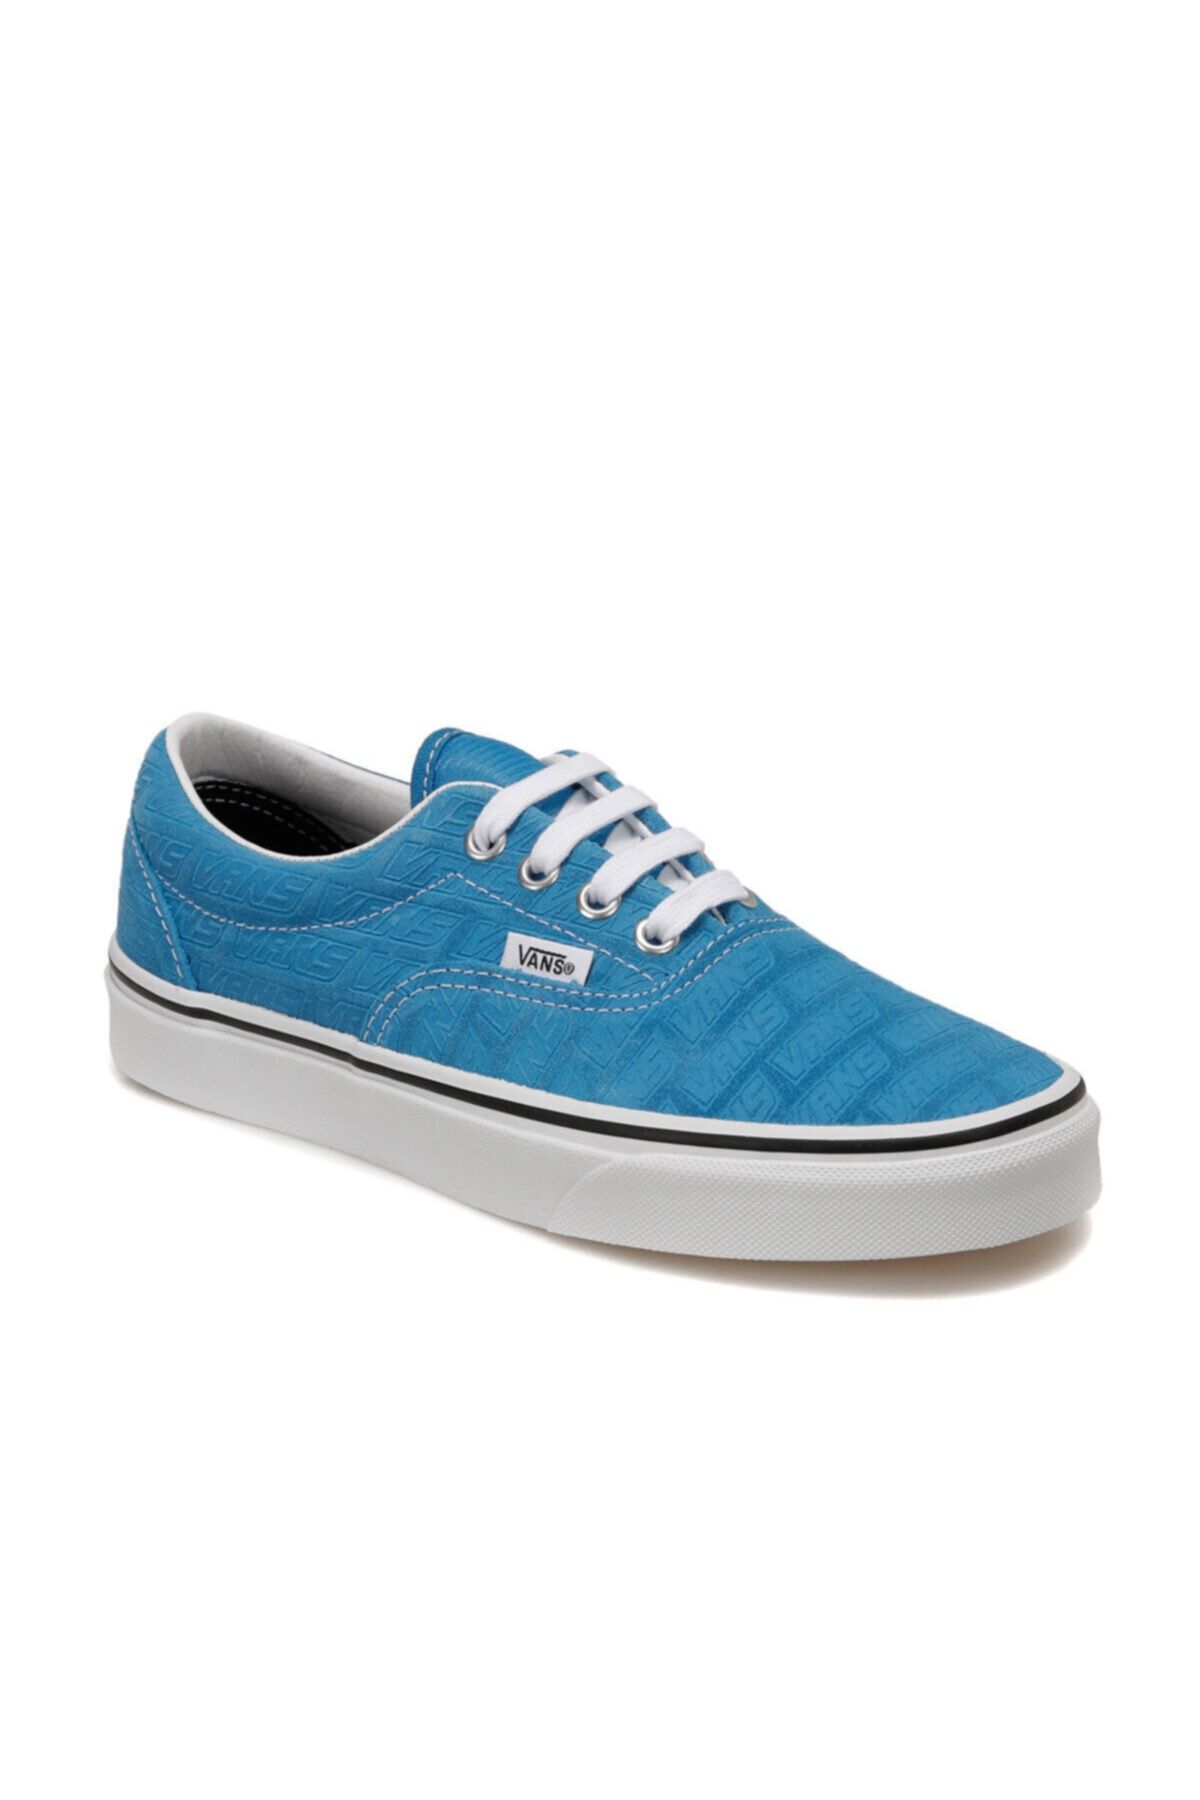 Vans UA ERA Mavi Erkek Çocuk Sneaker Ayakkabı 100583600